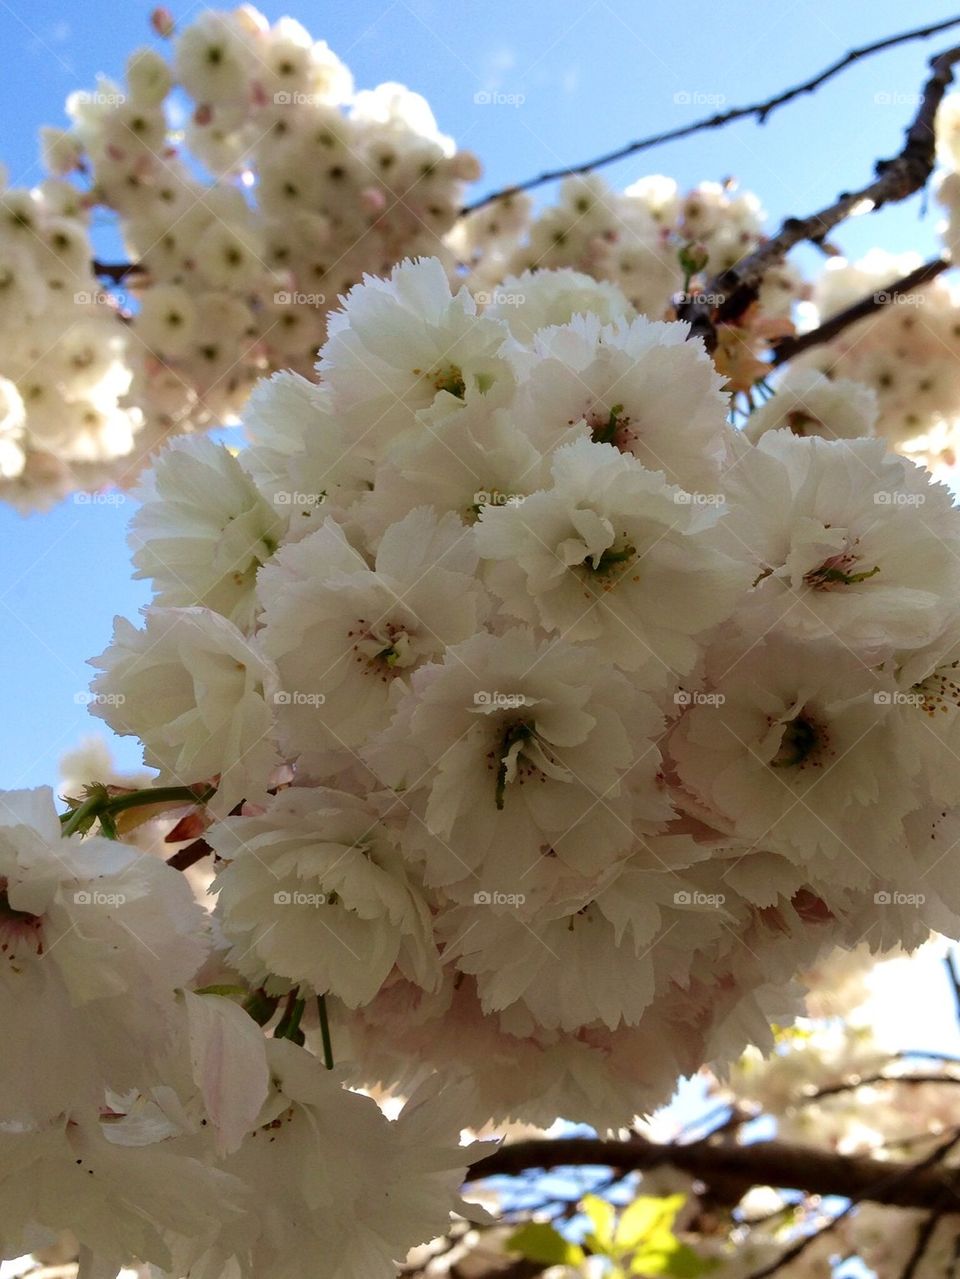 Cheery cherry blossoms